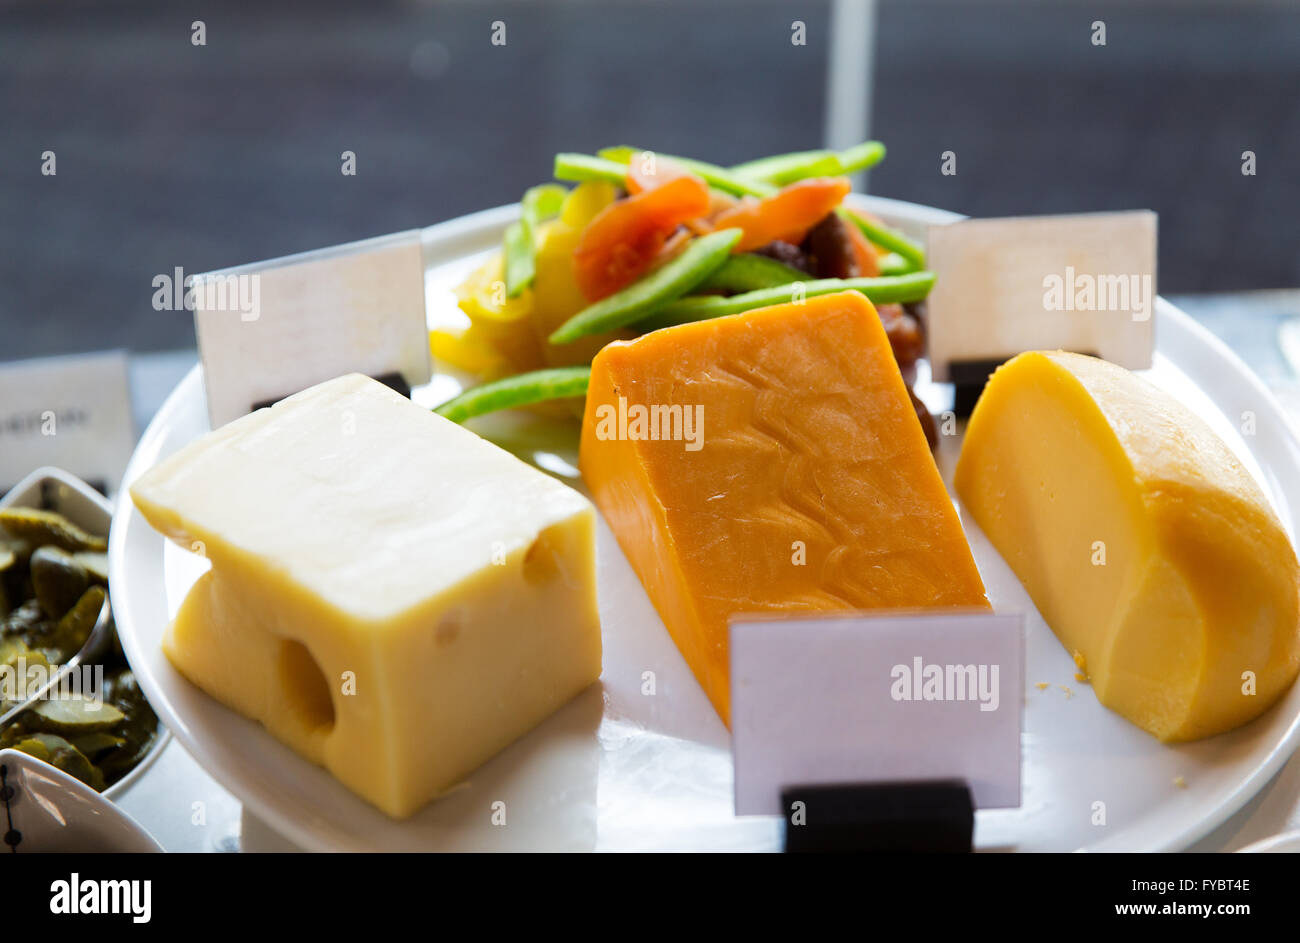 Nahaufnahme von Käse auf Showcase im café Stockfoto